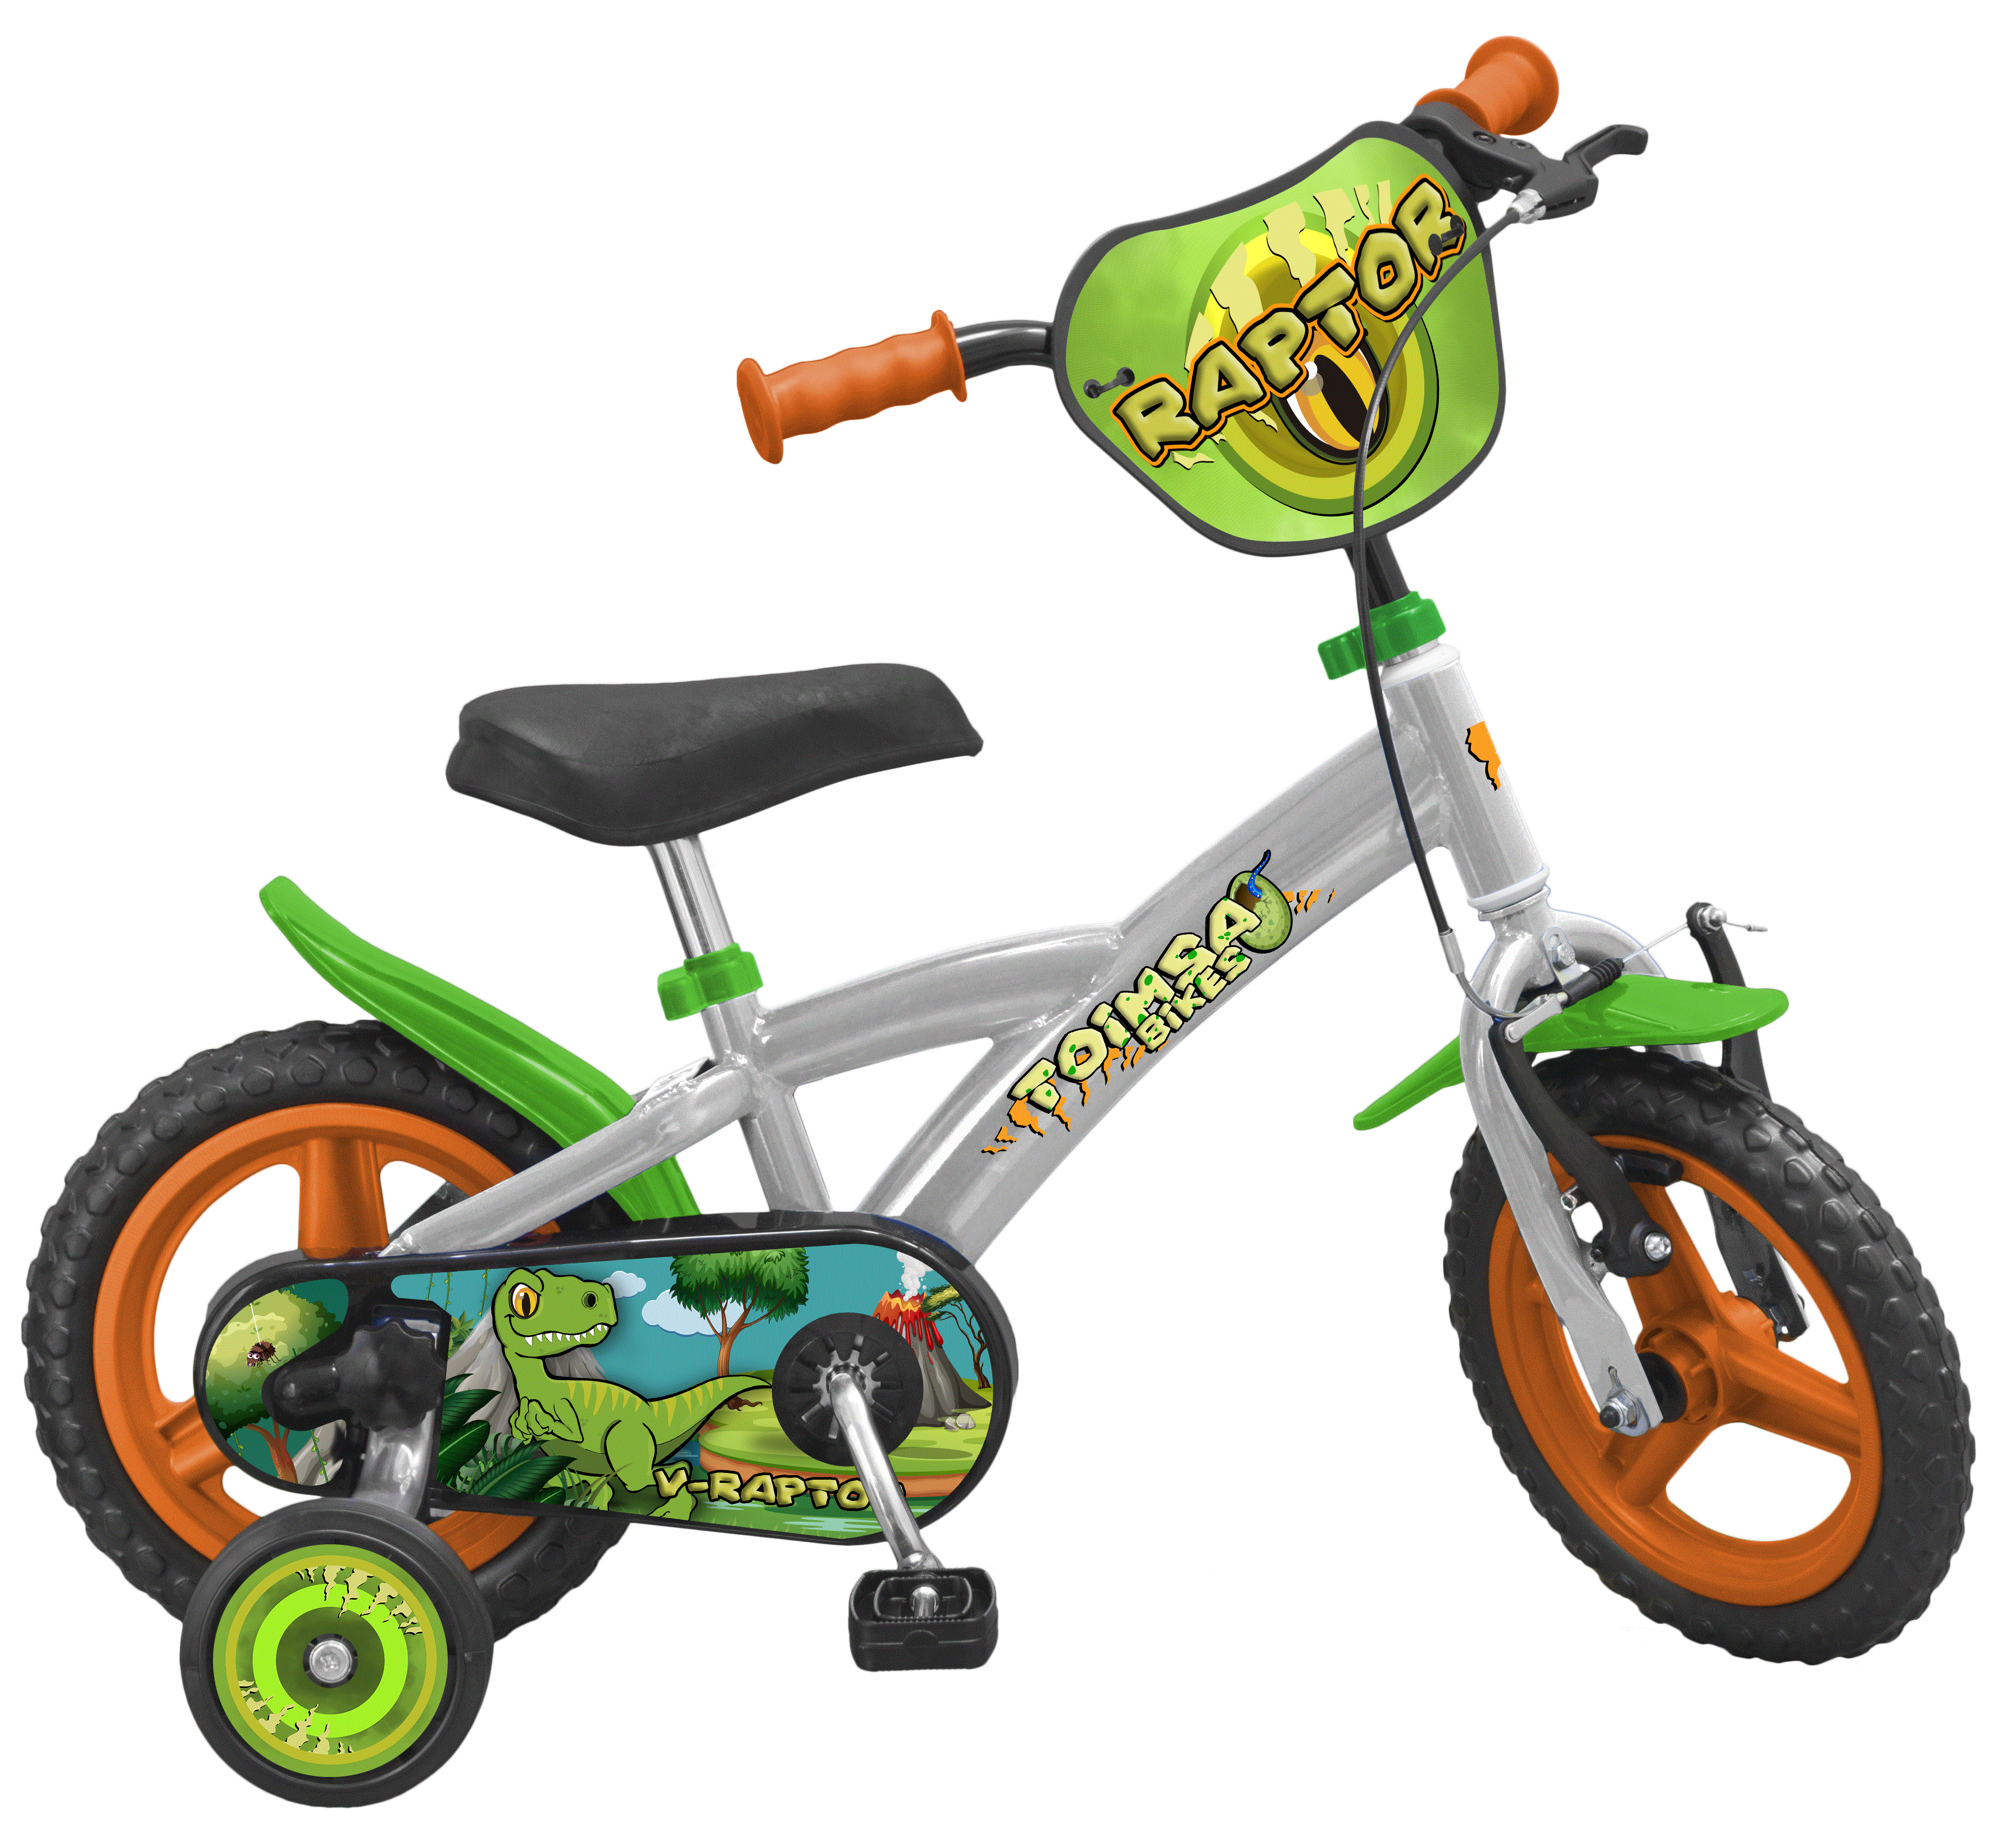 biciclete roti ajutatoare copii baieti Toimsa V Raptor 12 inch 3 4 5 ani [1]